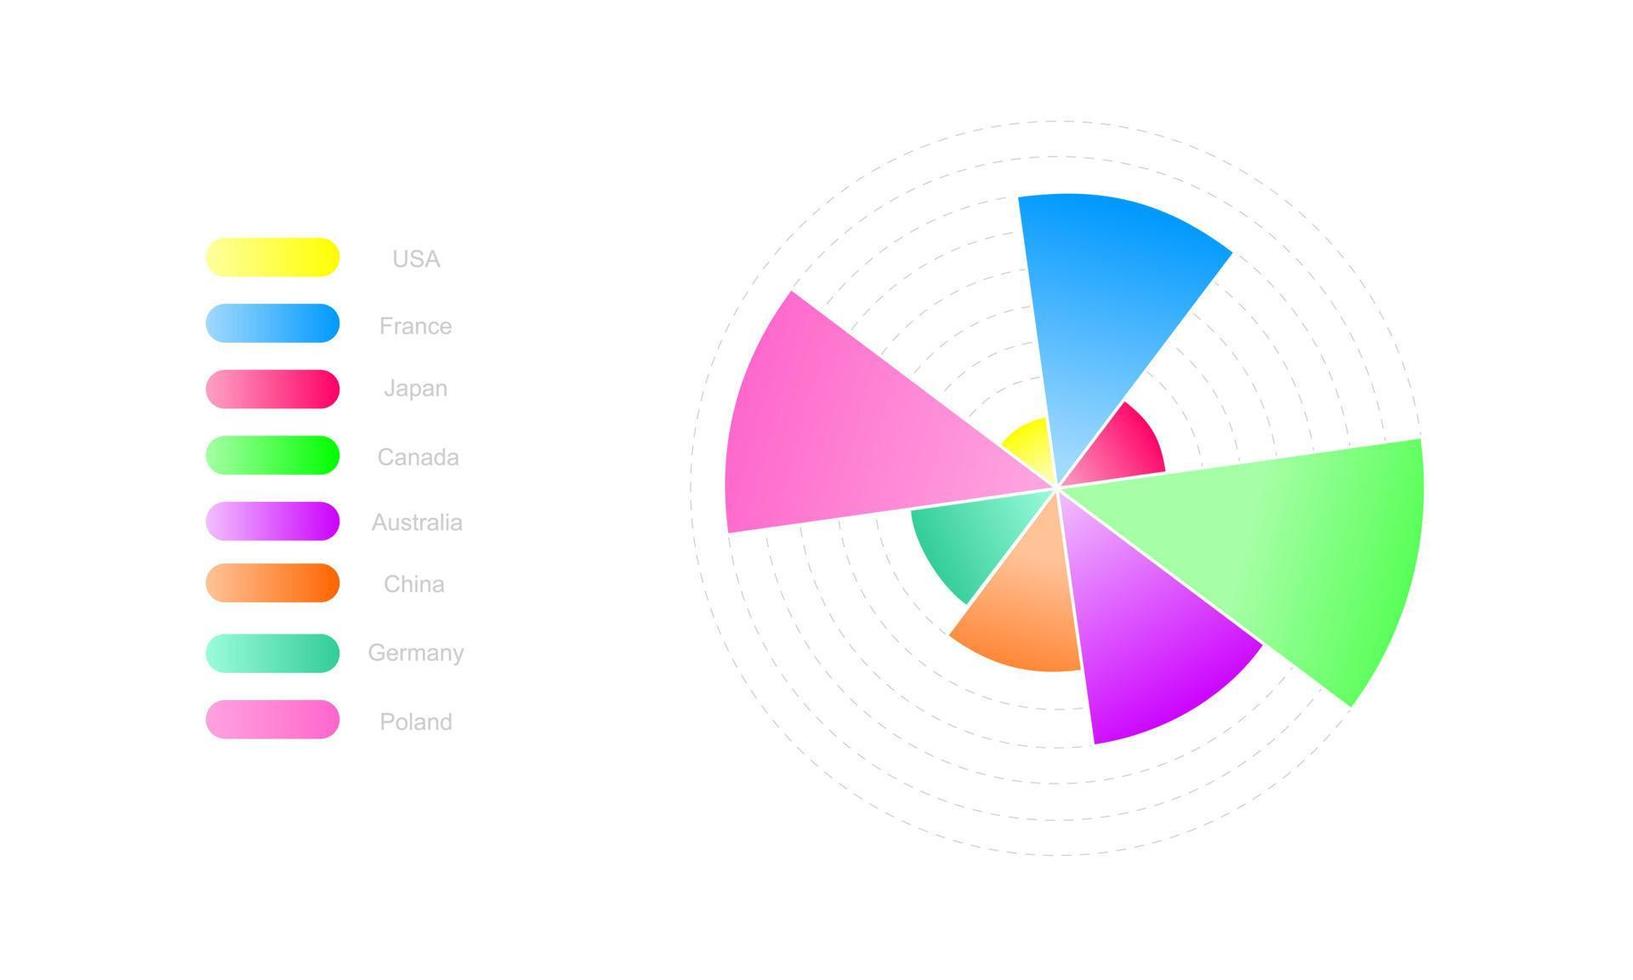 plantilla de gráfico circular. diagrama de rueda con 8 segmentos coloridos de diferentes tamaños. diseño de visualización de datos estadísticos. ejemplo de diseño infográfico empresarial vector